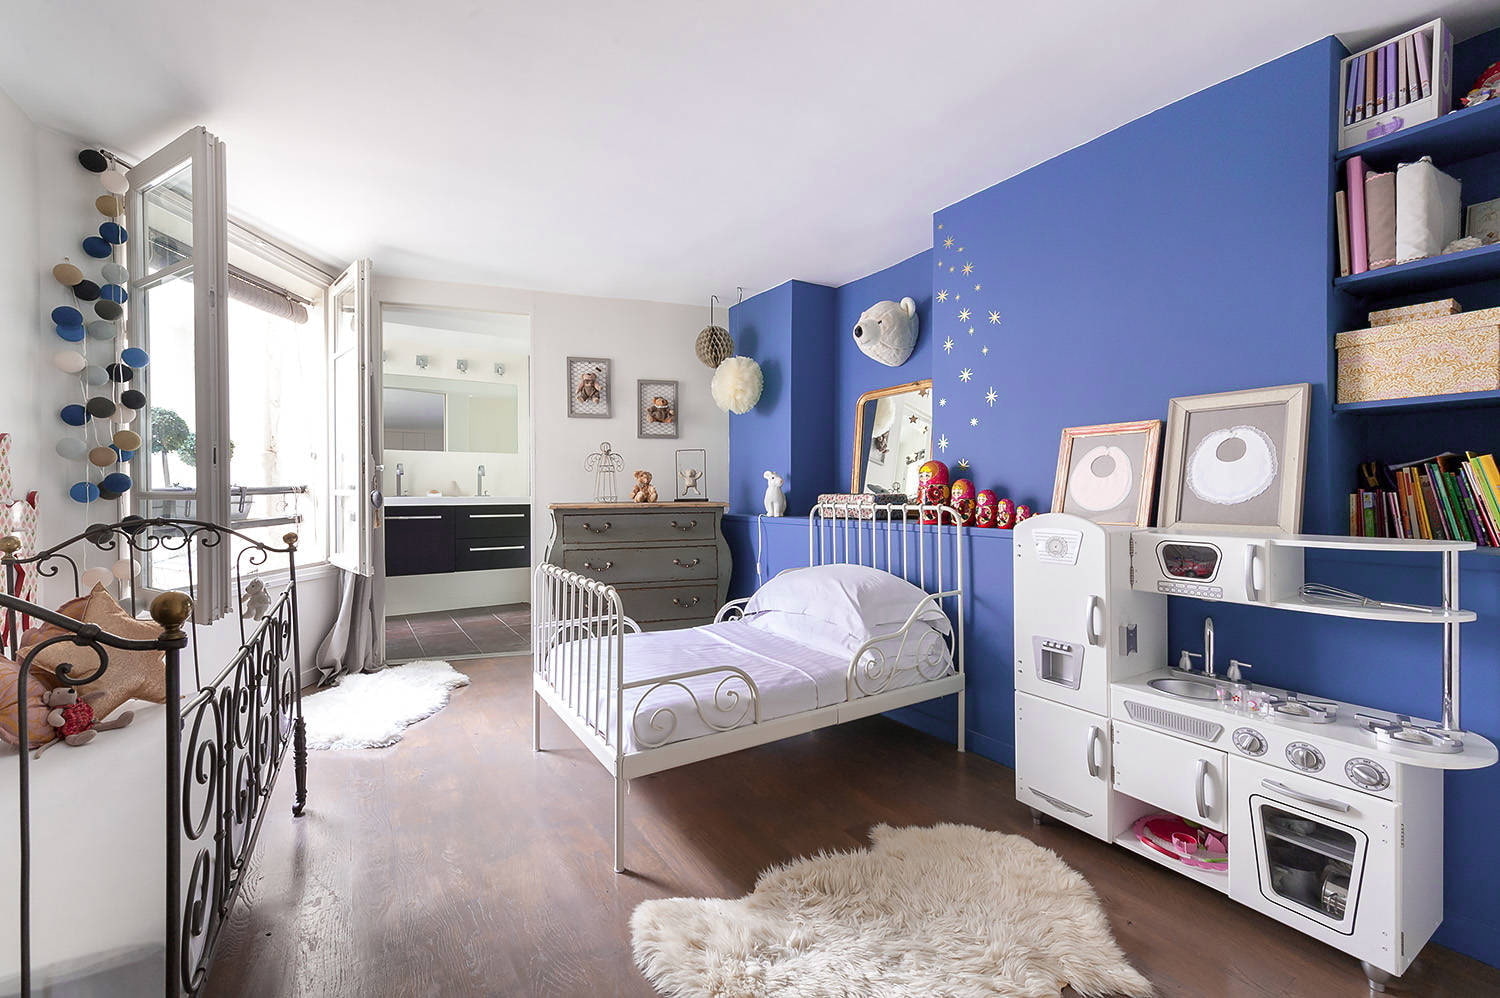 Детская мебель серая. Детская в голубых тонах. Детская комната в синих тонах. Детская в скандинавском стиле. Комната в голубом цвете.